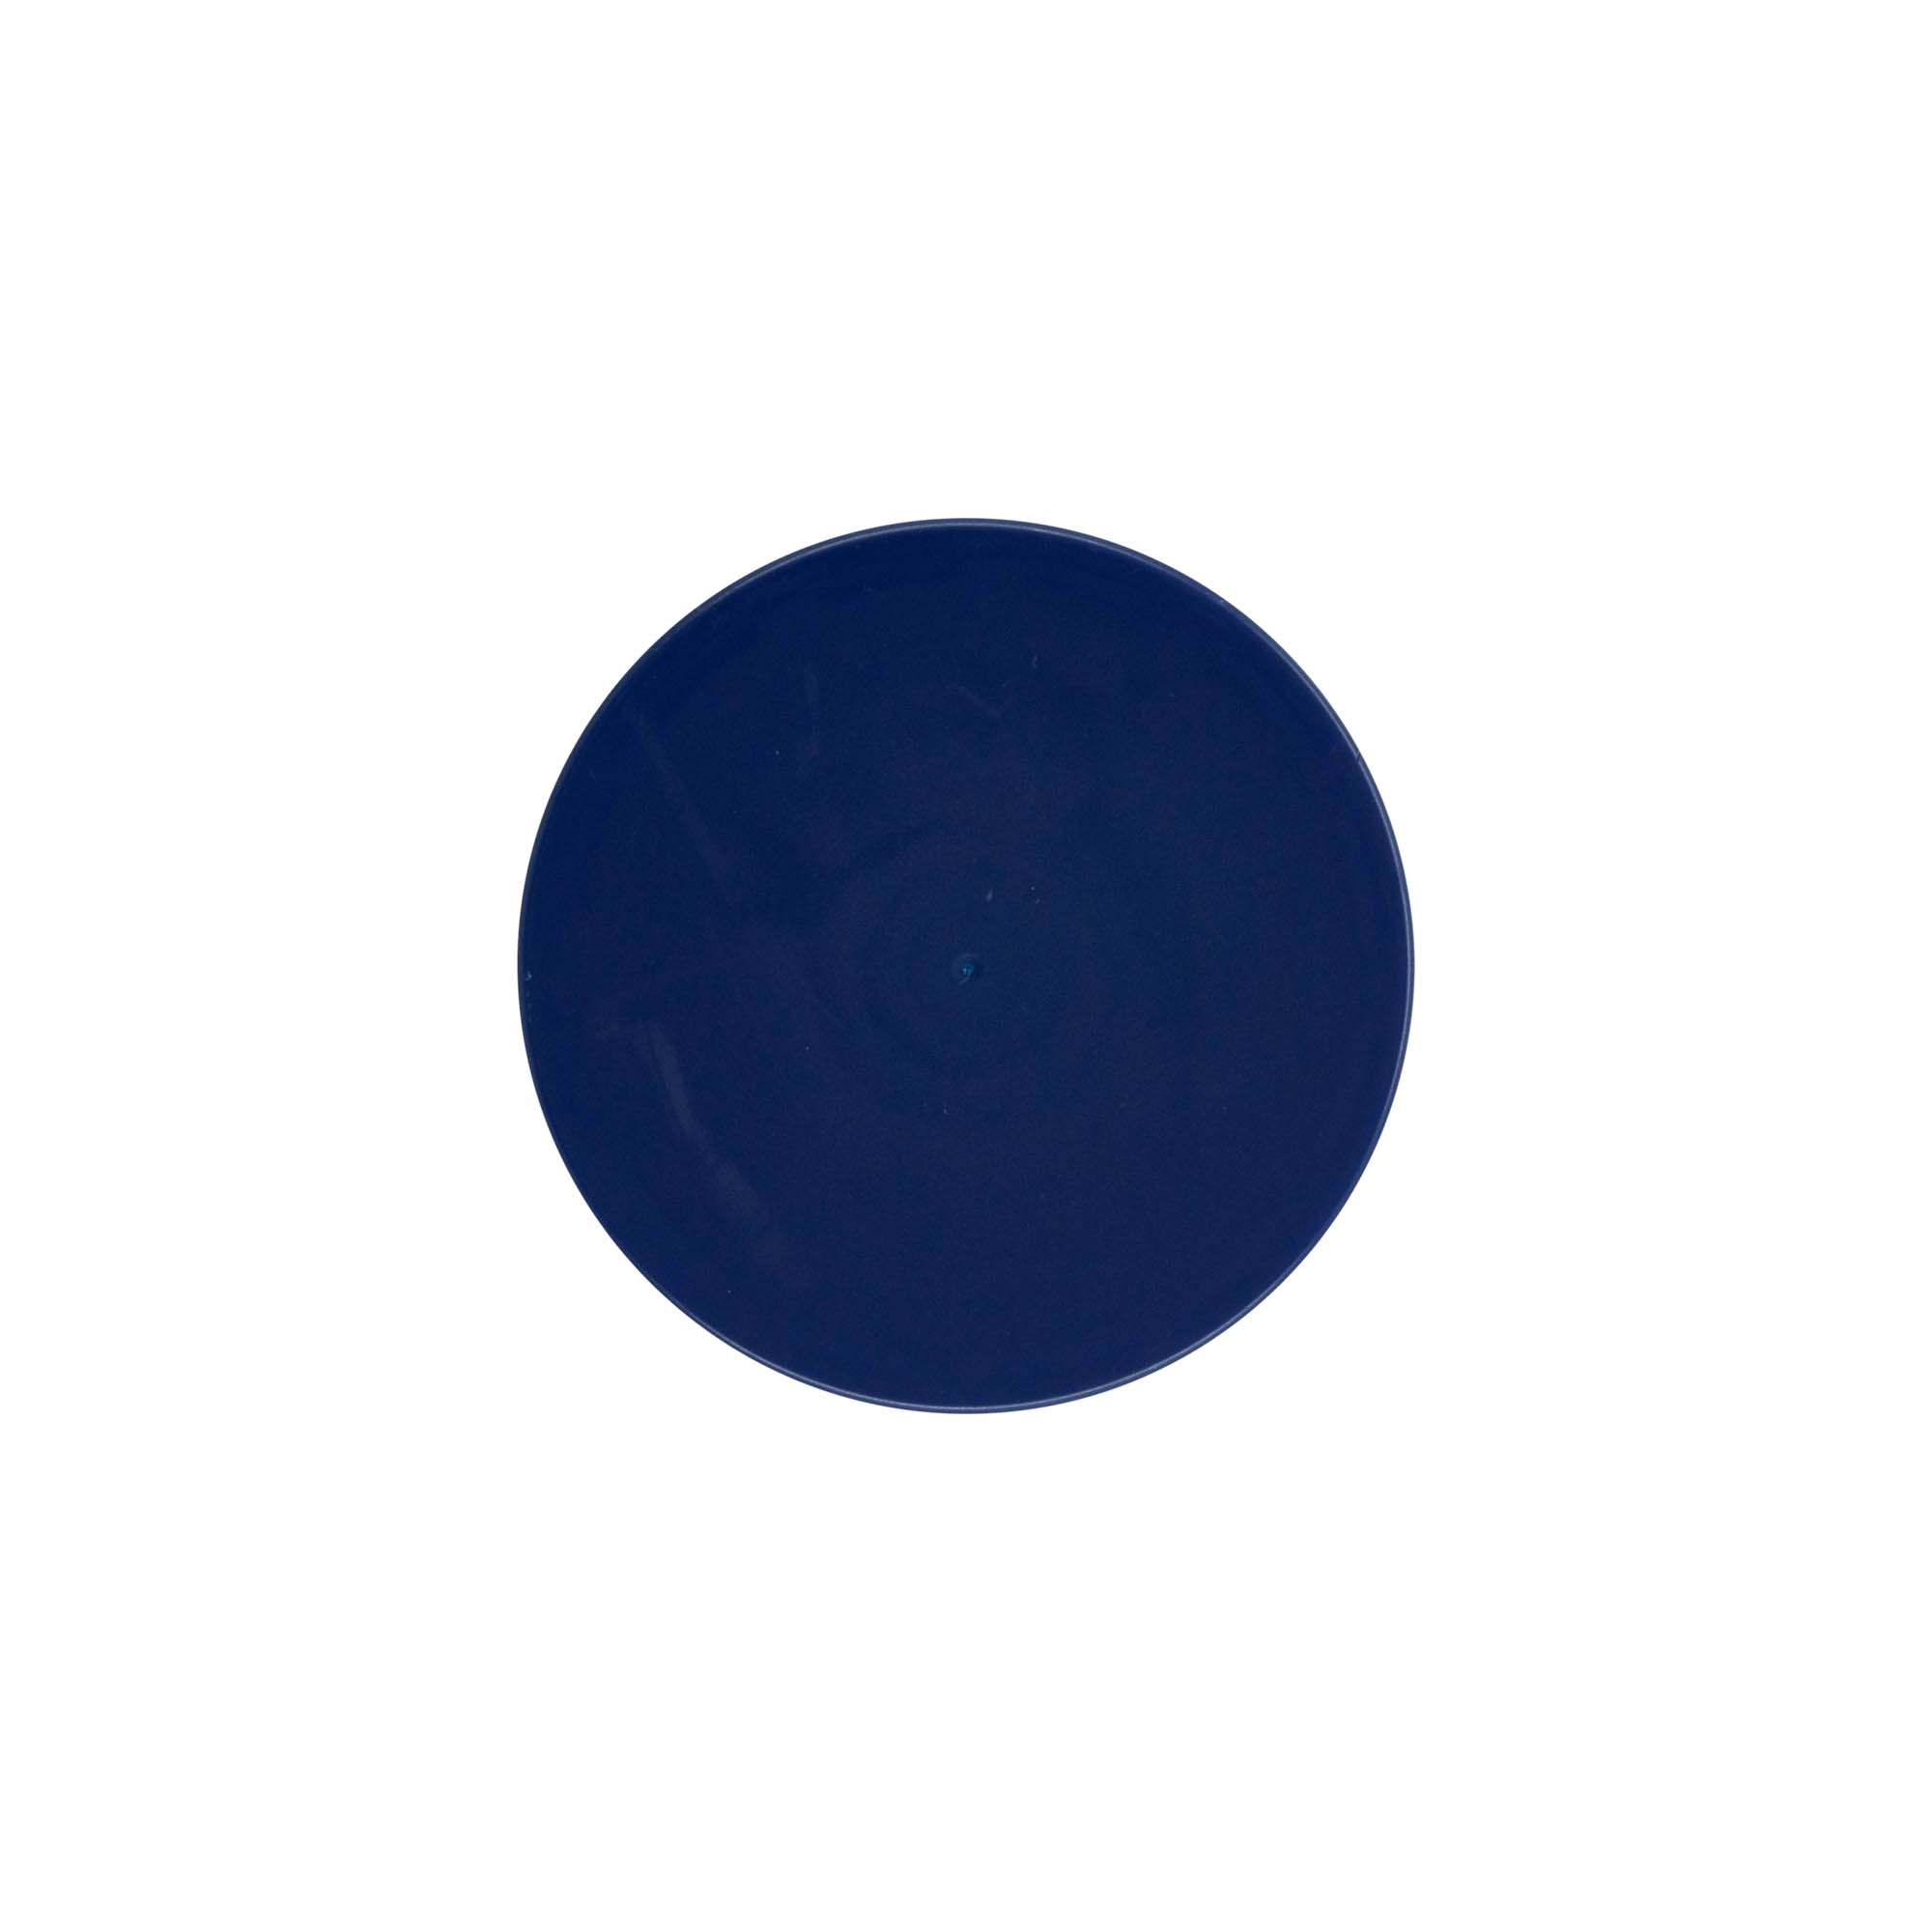 Hætte til smalhalset keramikkrukke, HDPE-plast, blå